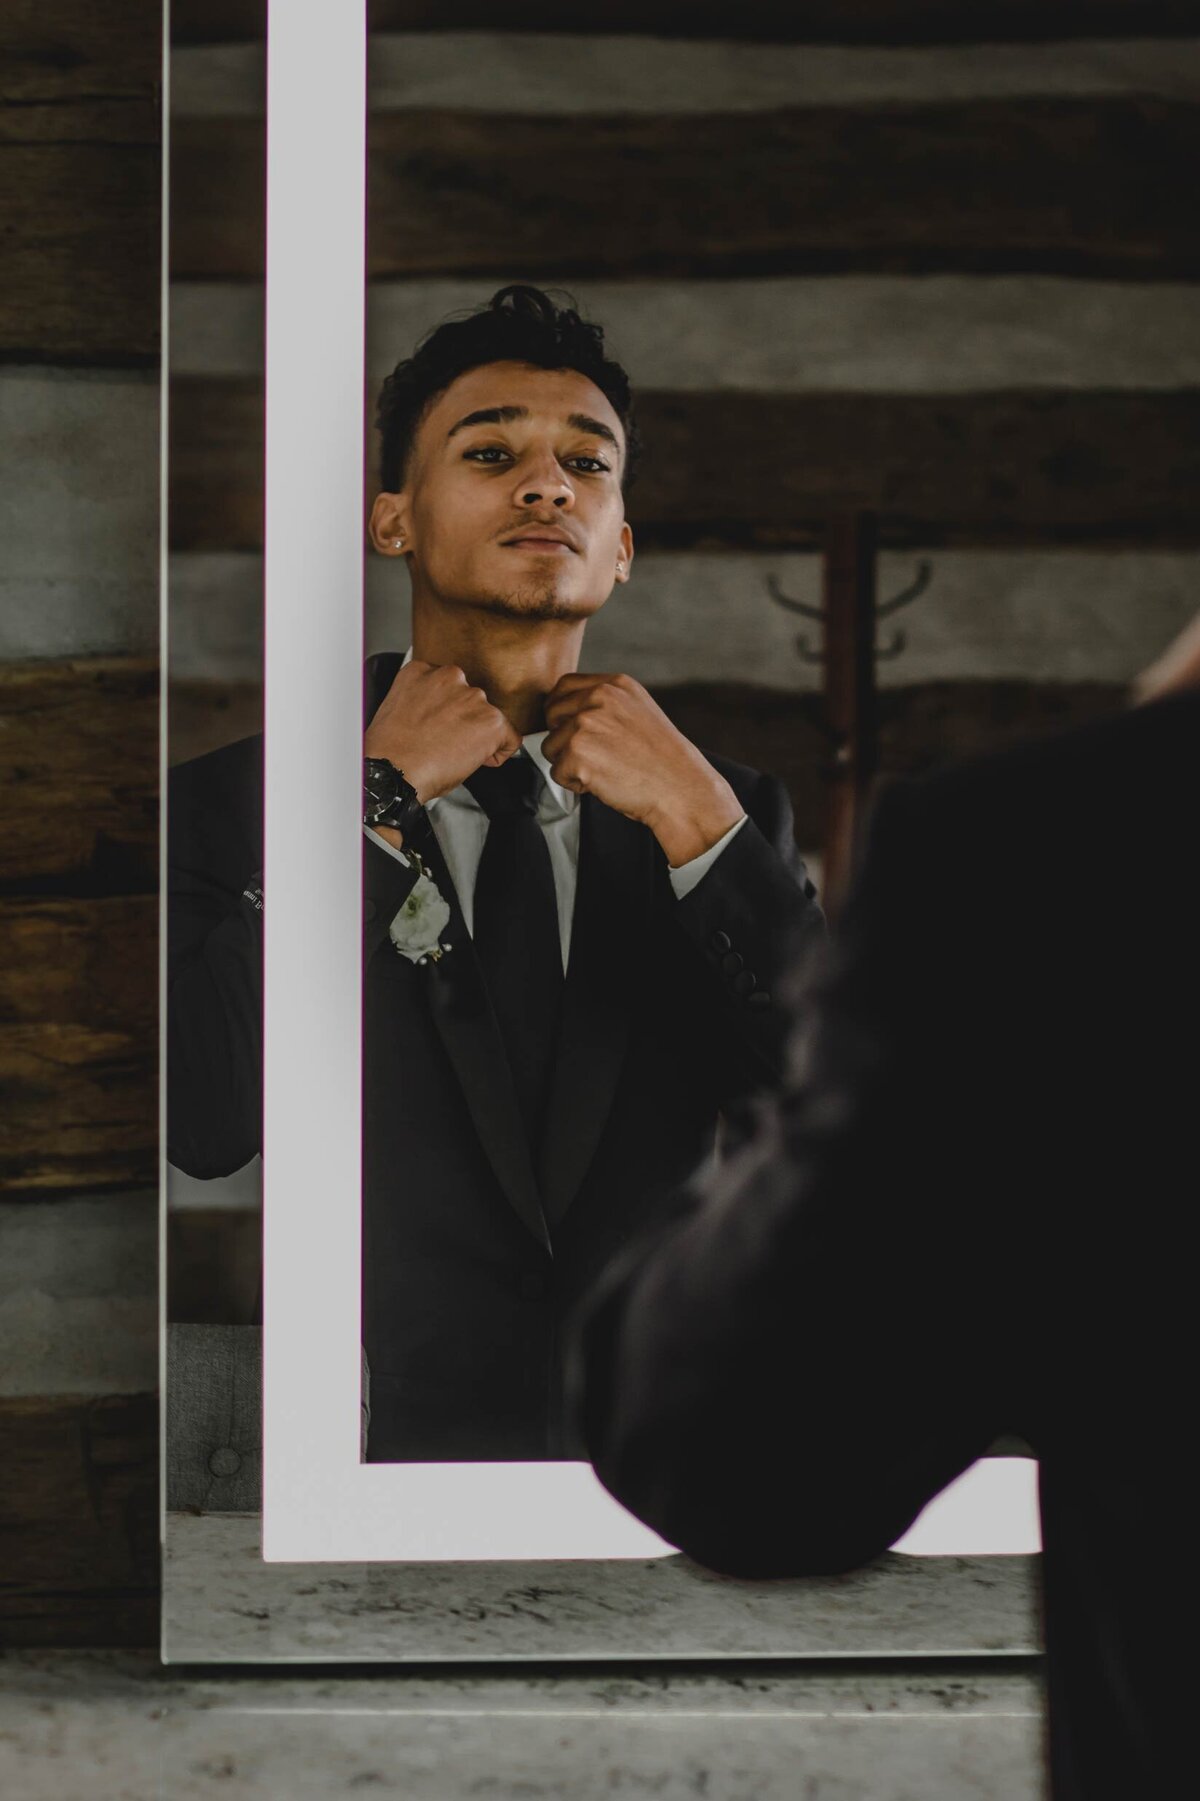 groom-getting-ready-mirror